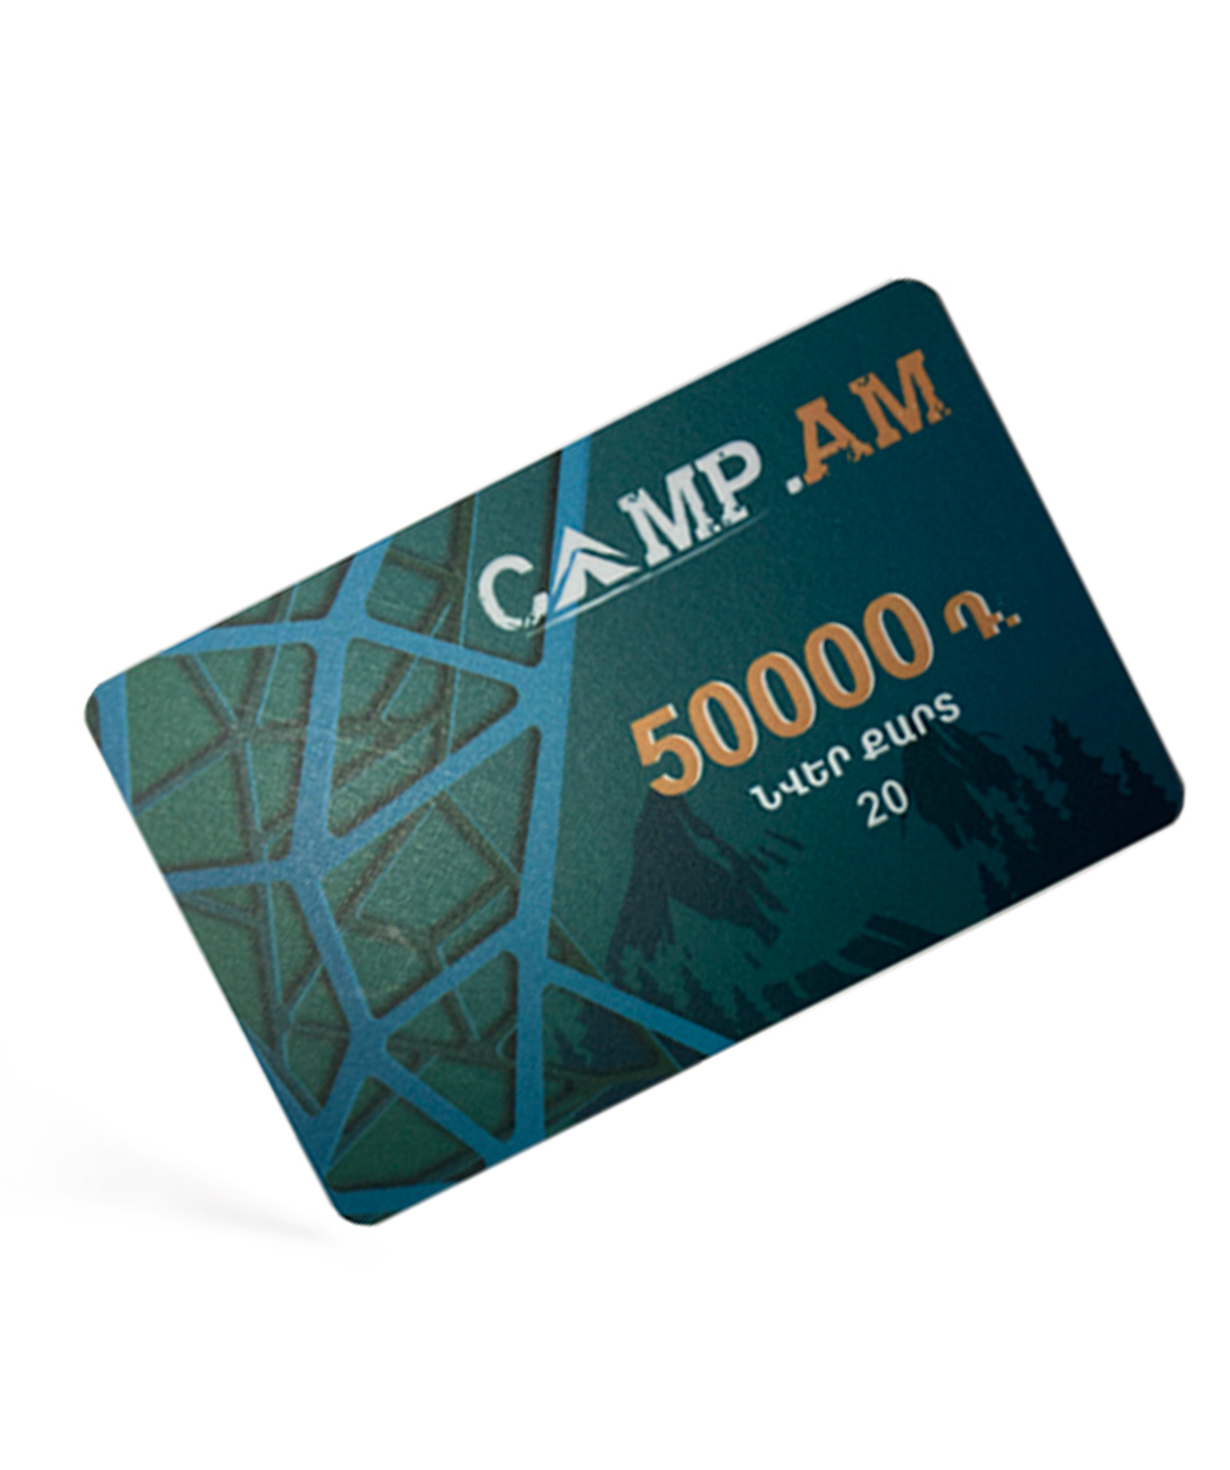 Նվեր-քարտ «Camp.am» 50,000